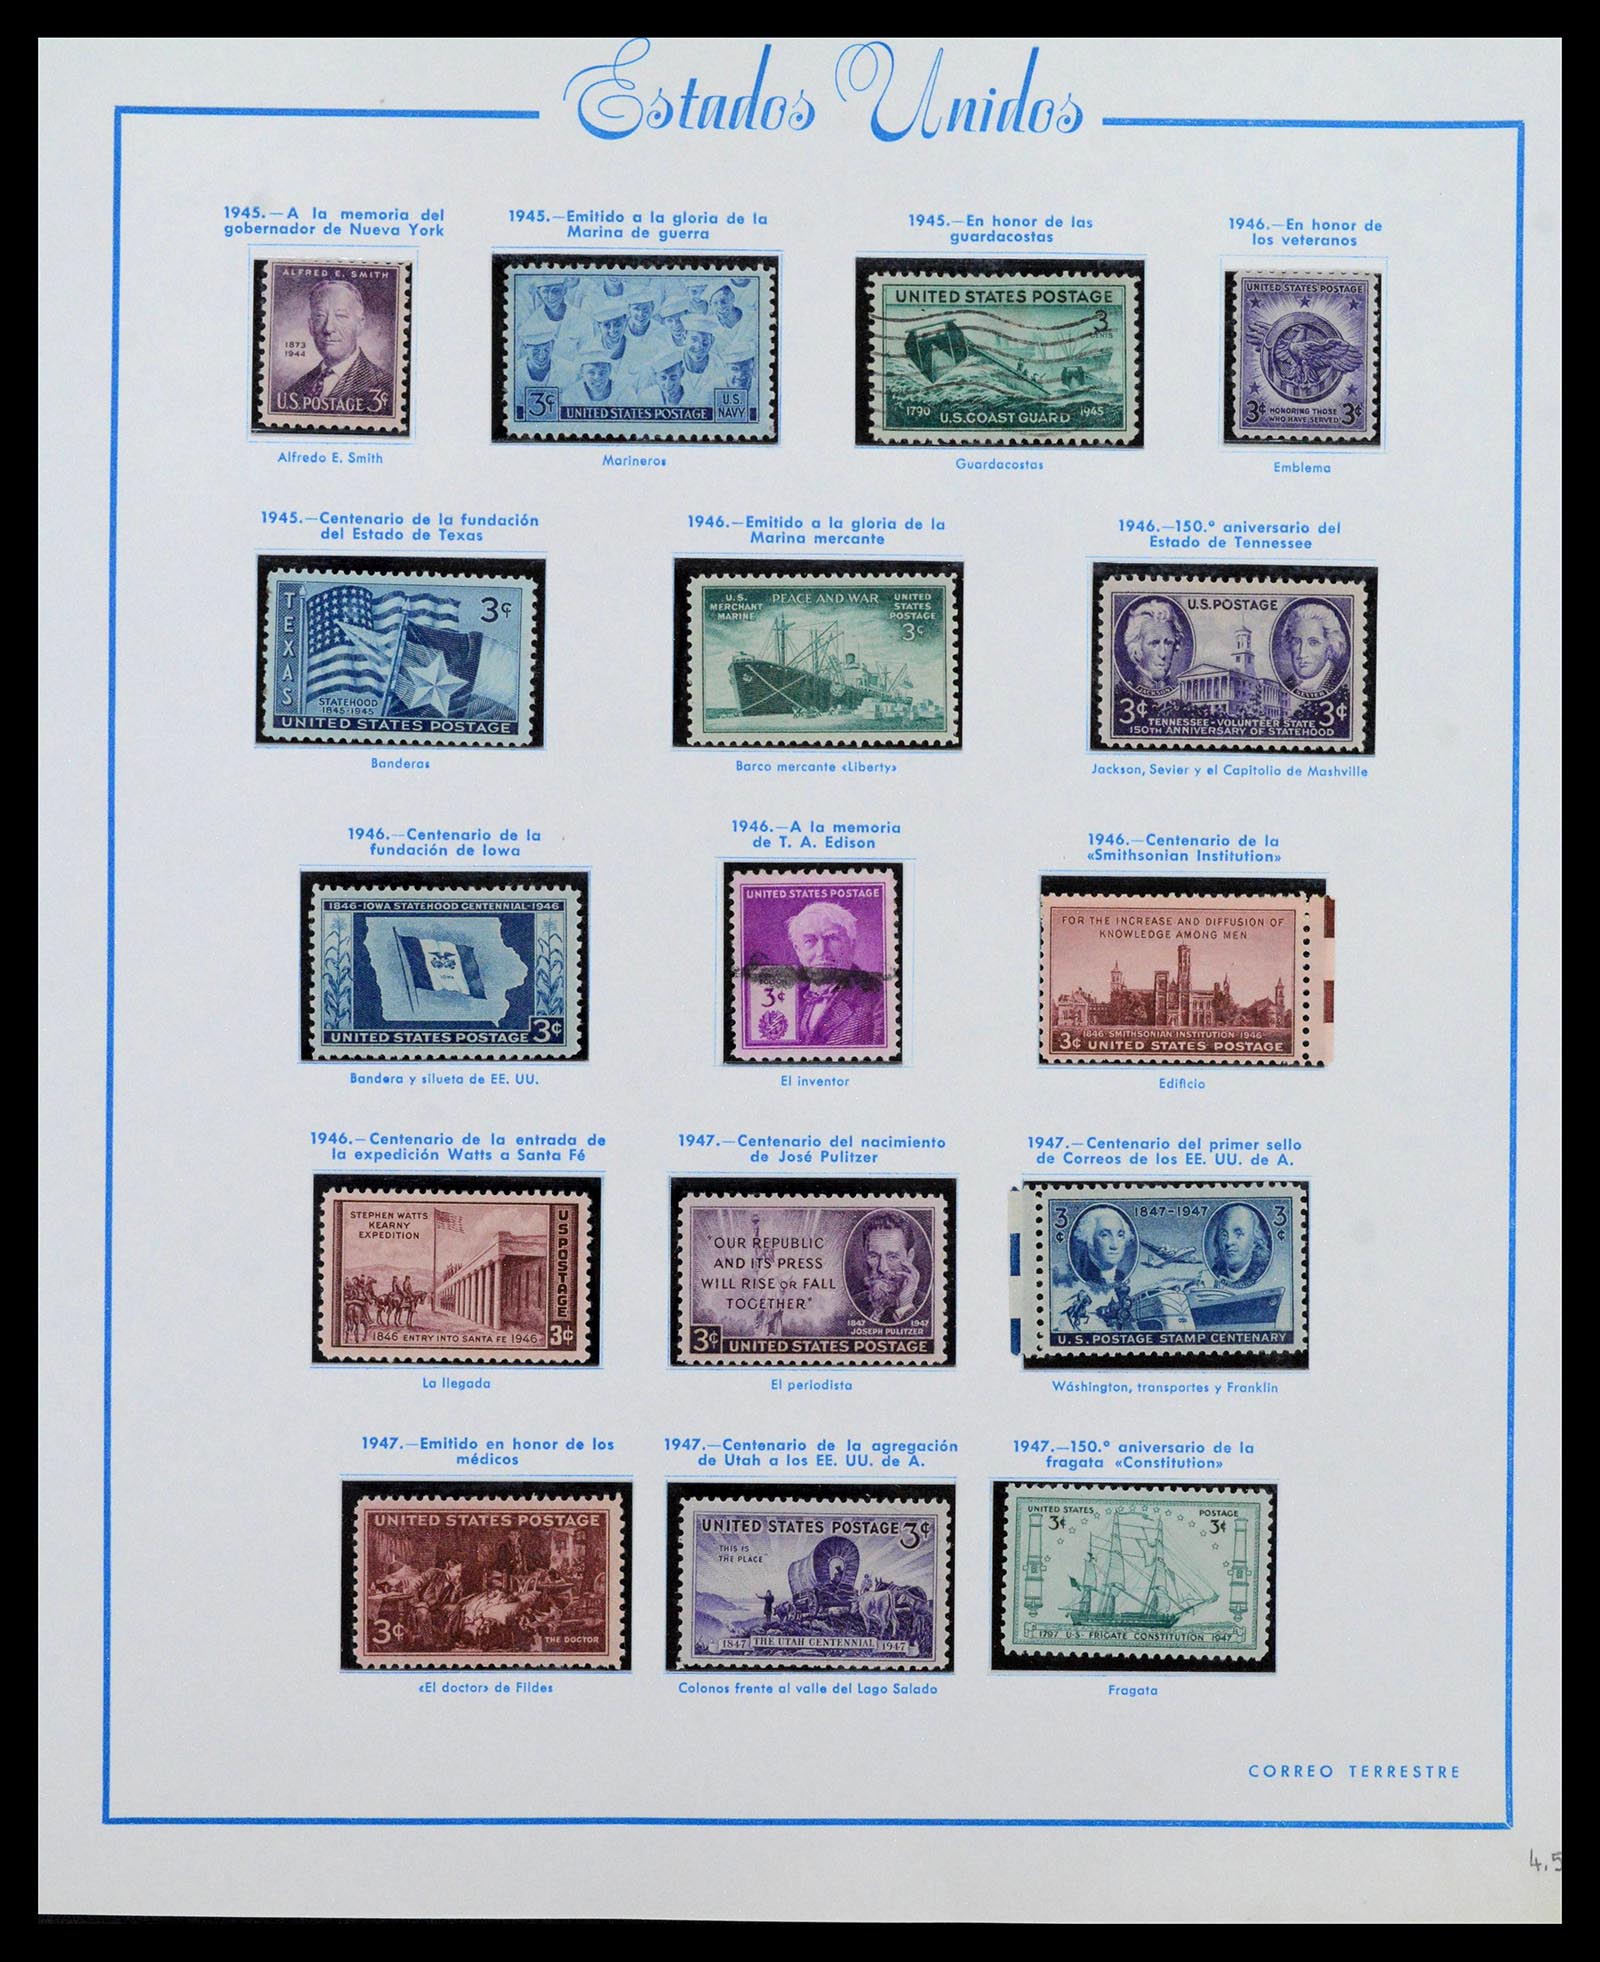 39190 0026 - Stamp collection 39190 USA 1851-1975.